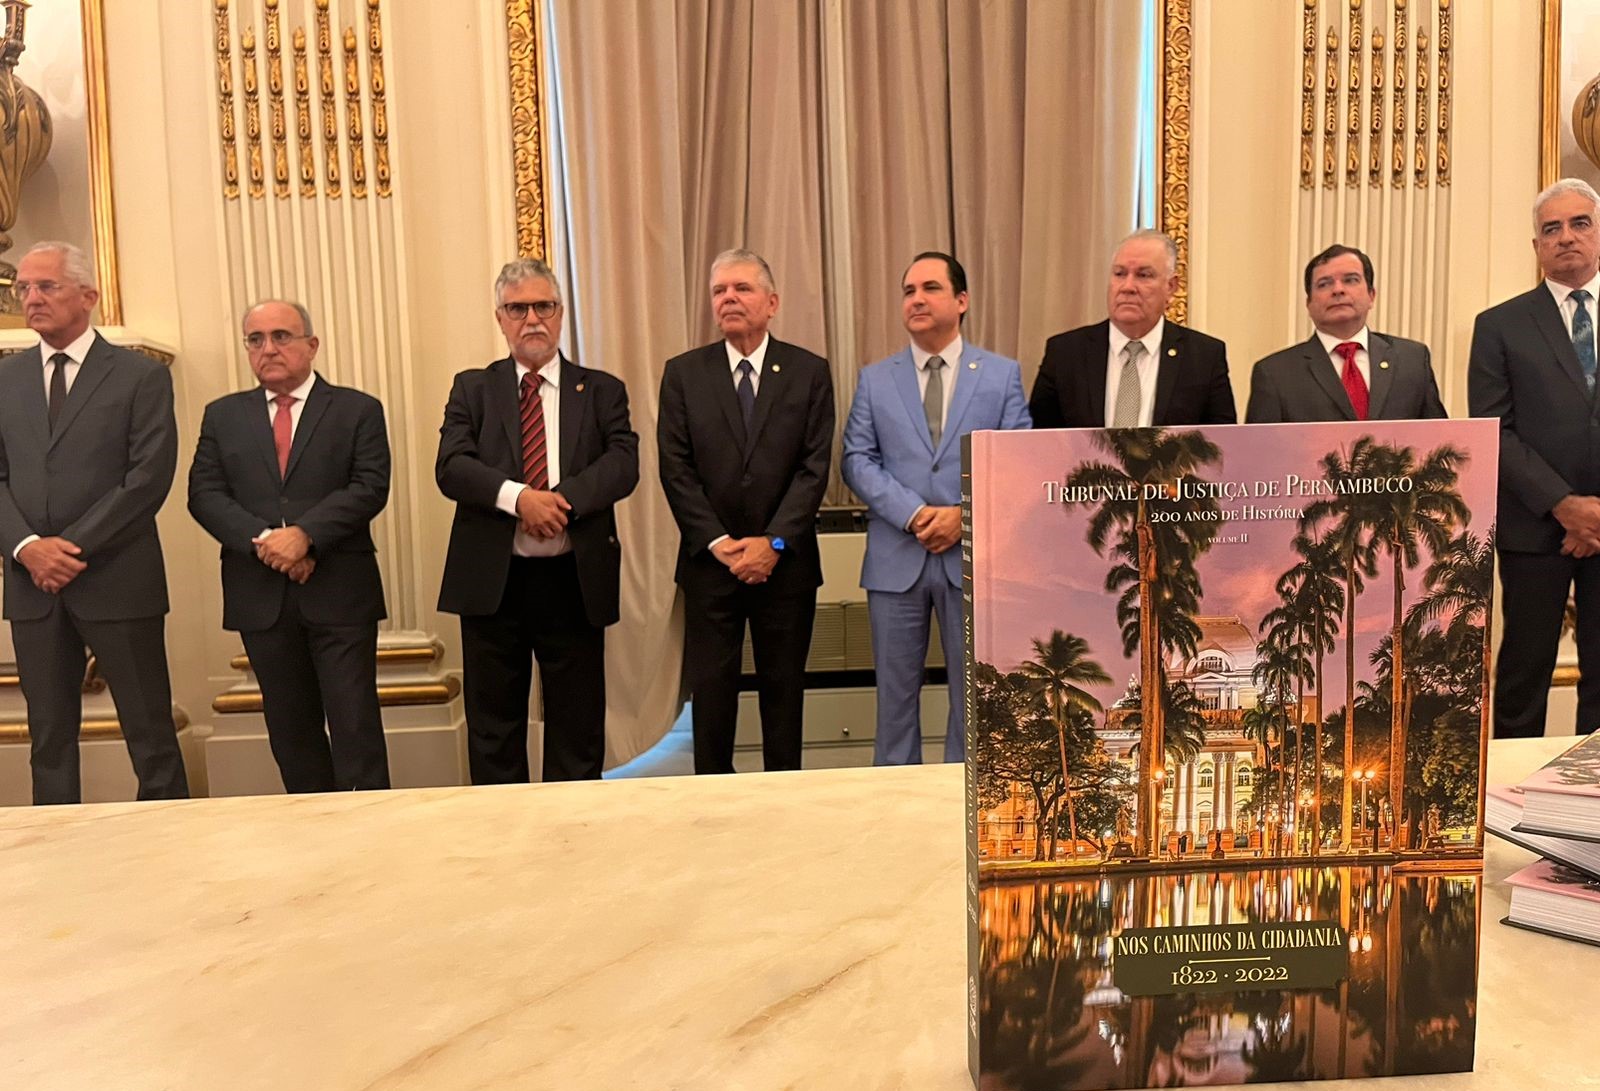 Solenidade de lançamento do livro "Tribunal de Justiça de Pernambuco - 200 anos de história", no Salão Nobre do Palácio da Justiça. 